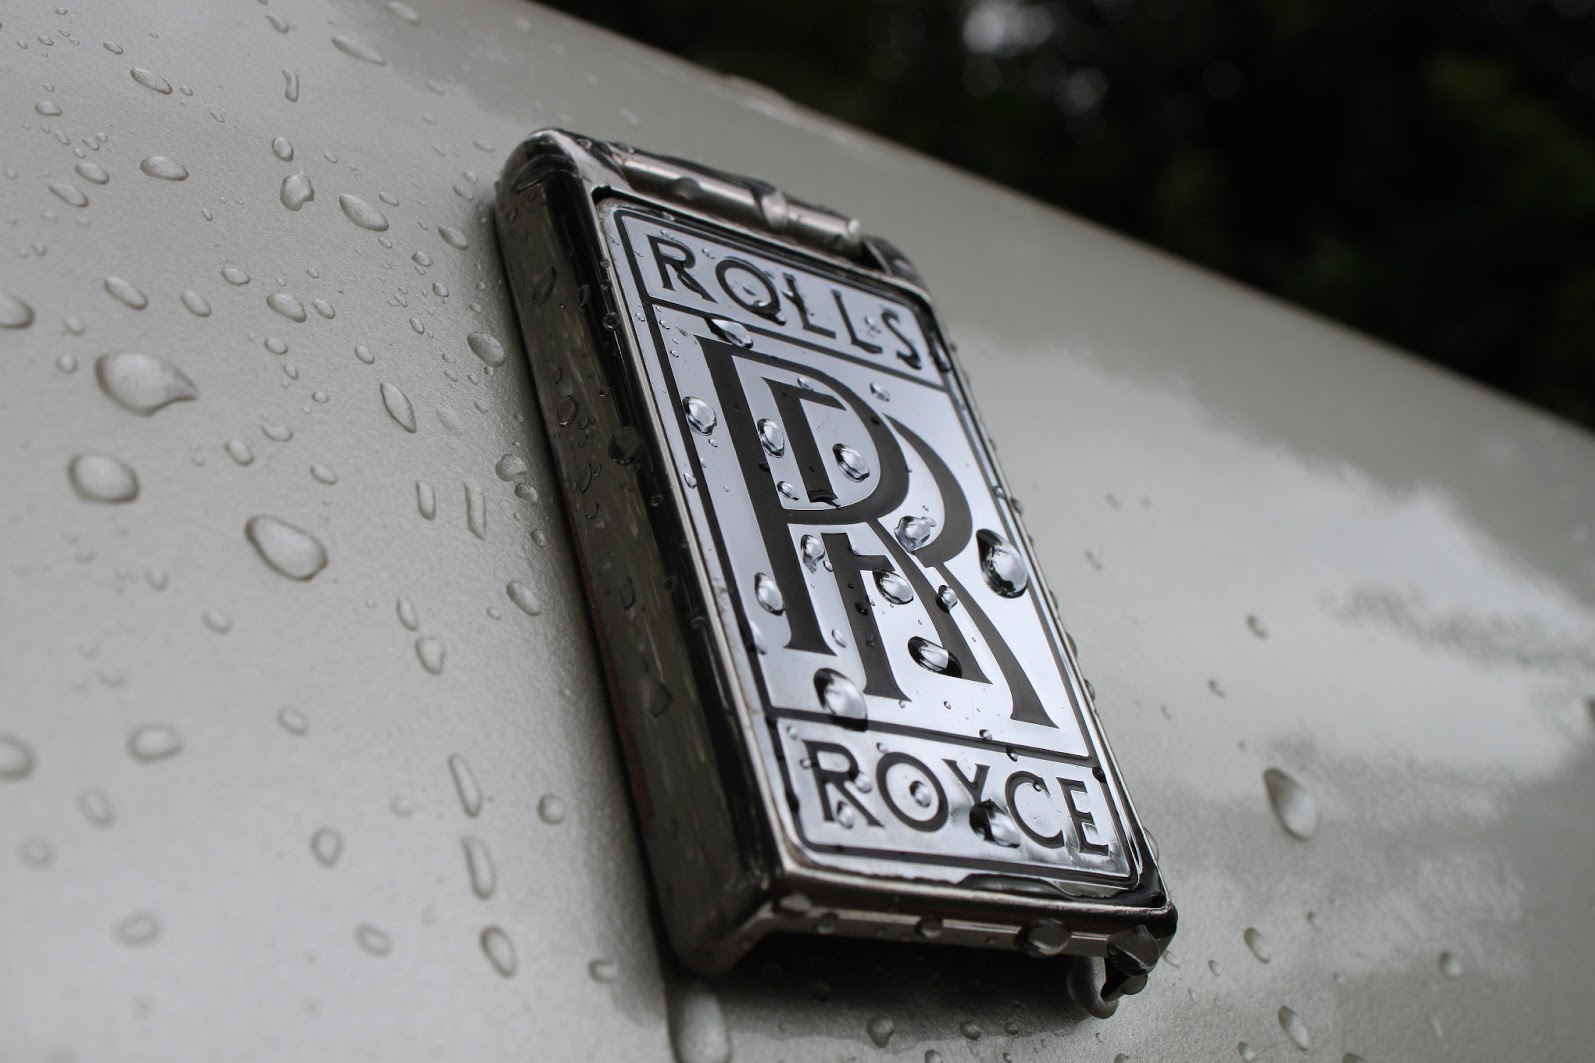 Rolls-Royce phá kỷ lục tốc độ nhanh nhất thế giới bằng phương tiện ít ai nghĩ tới